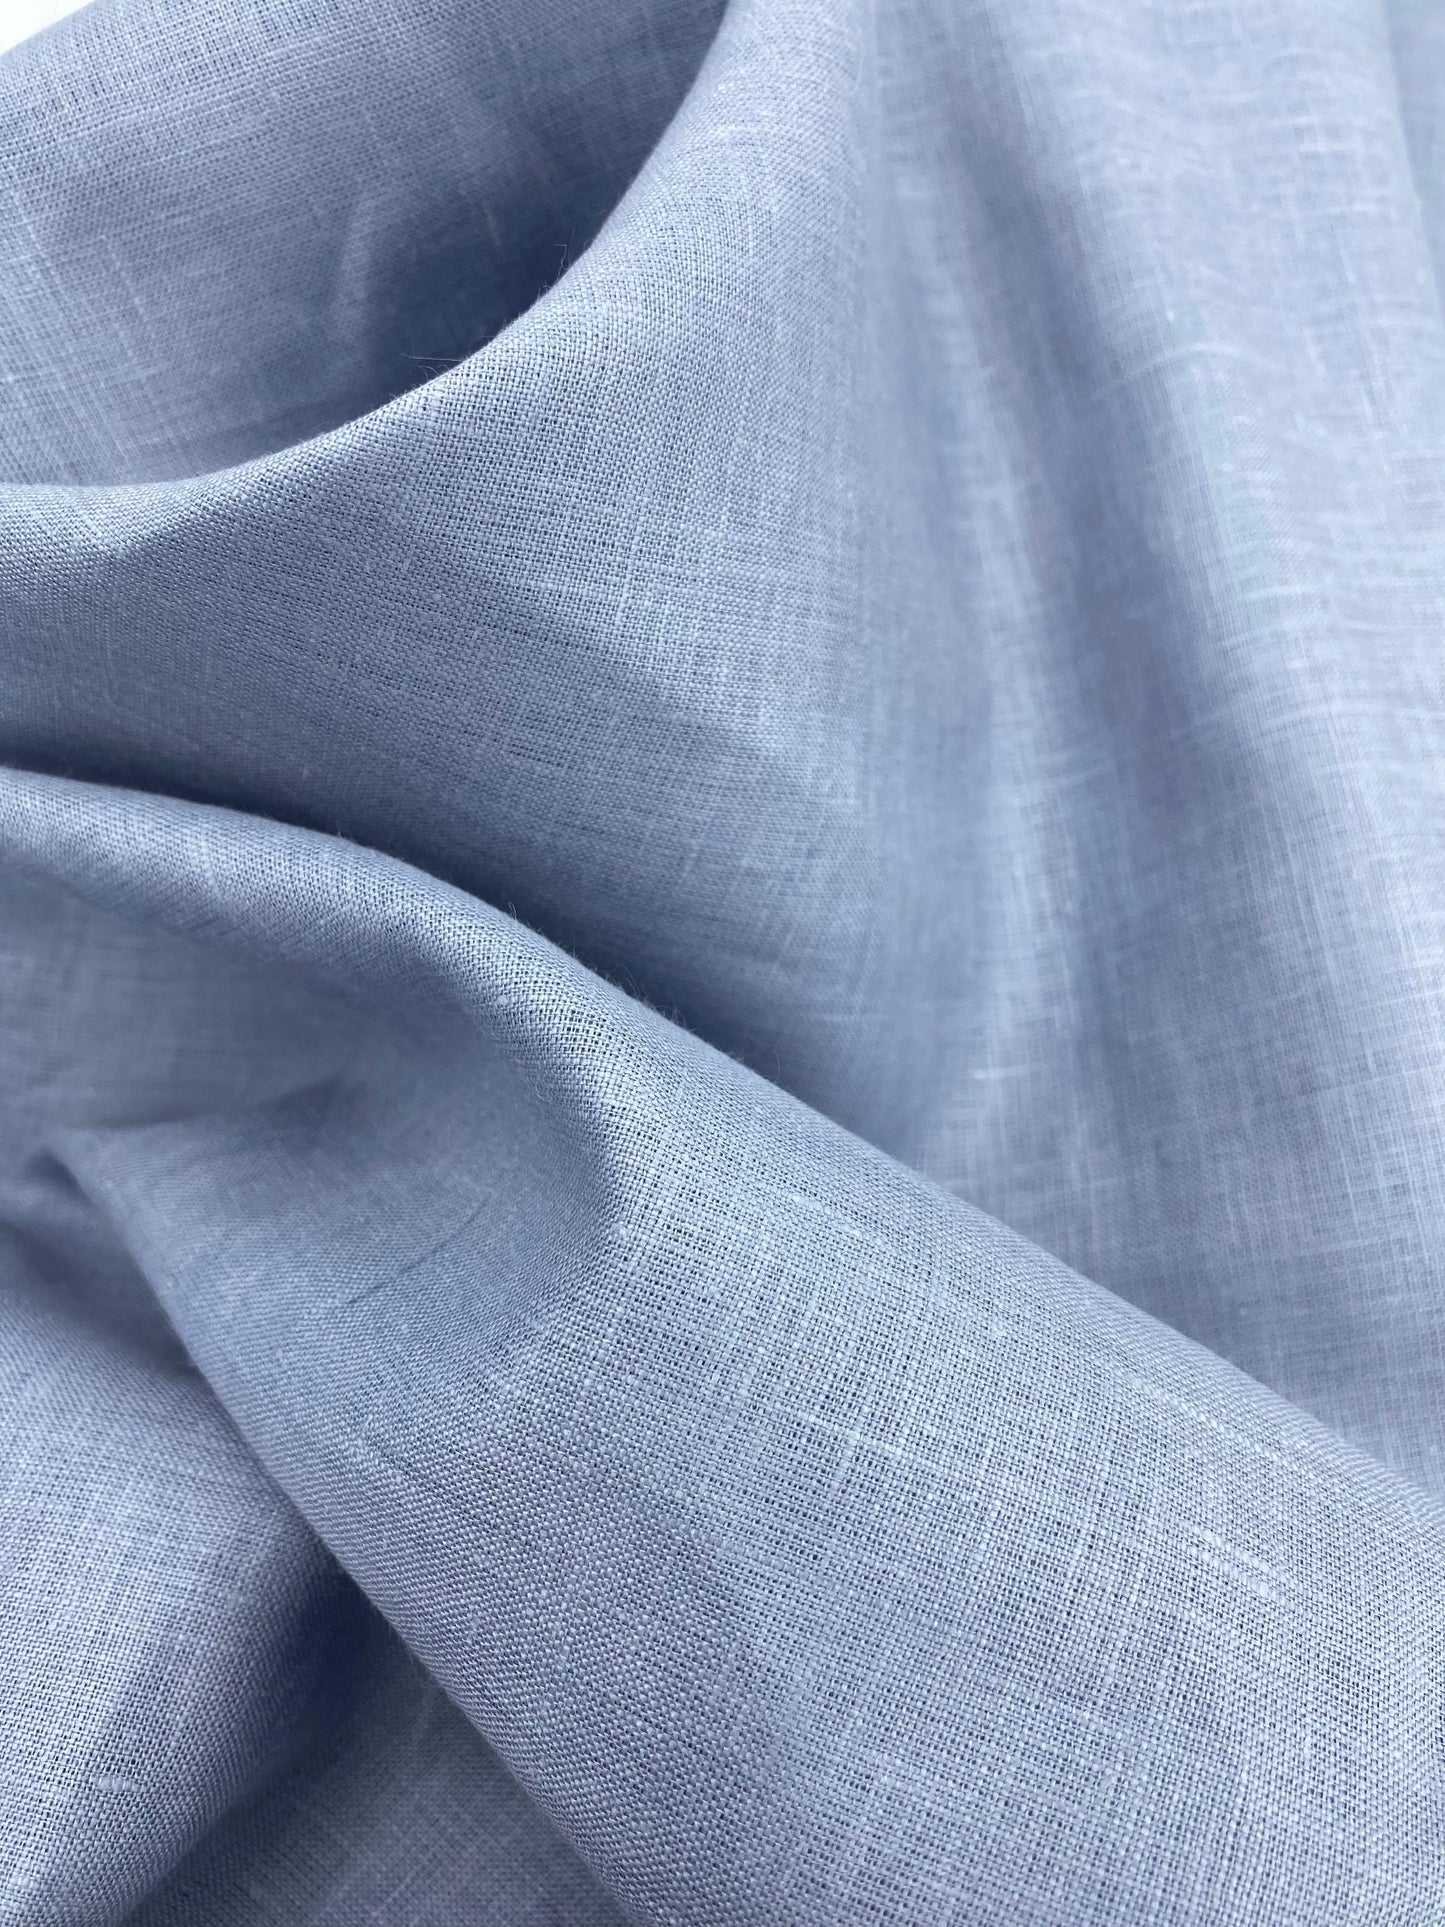 Light Lavender Solid Colour- Dyed Premium Linen Fabric LO- 127